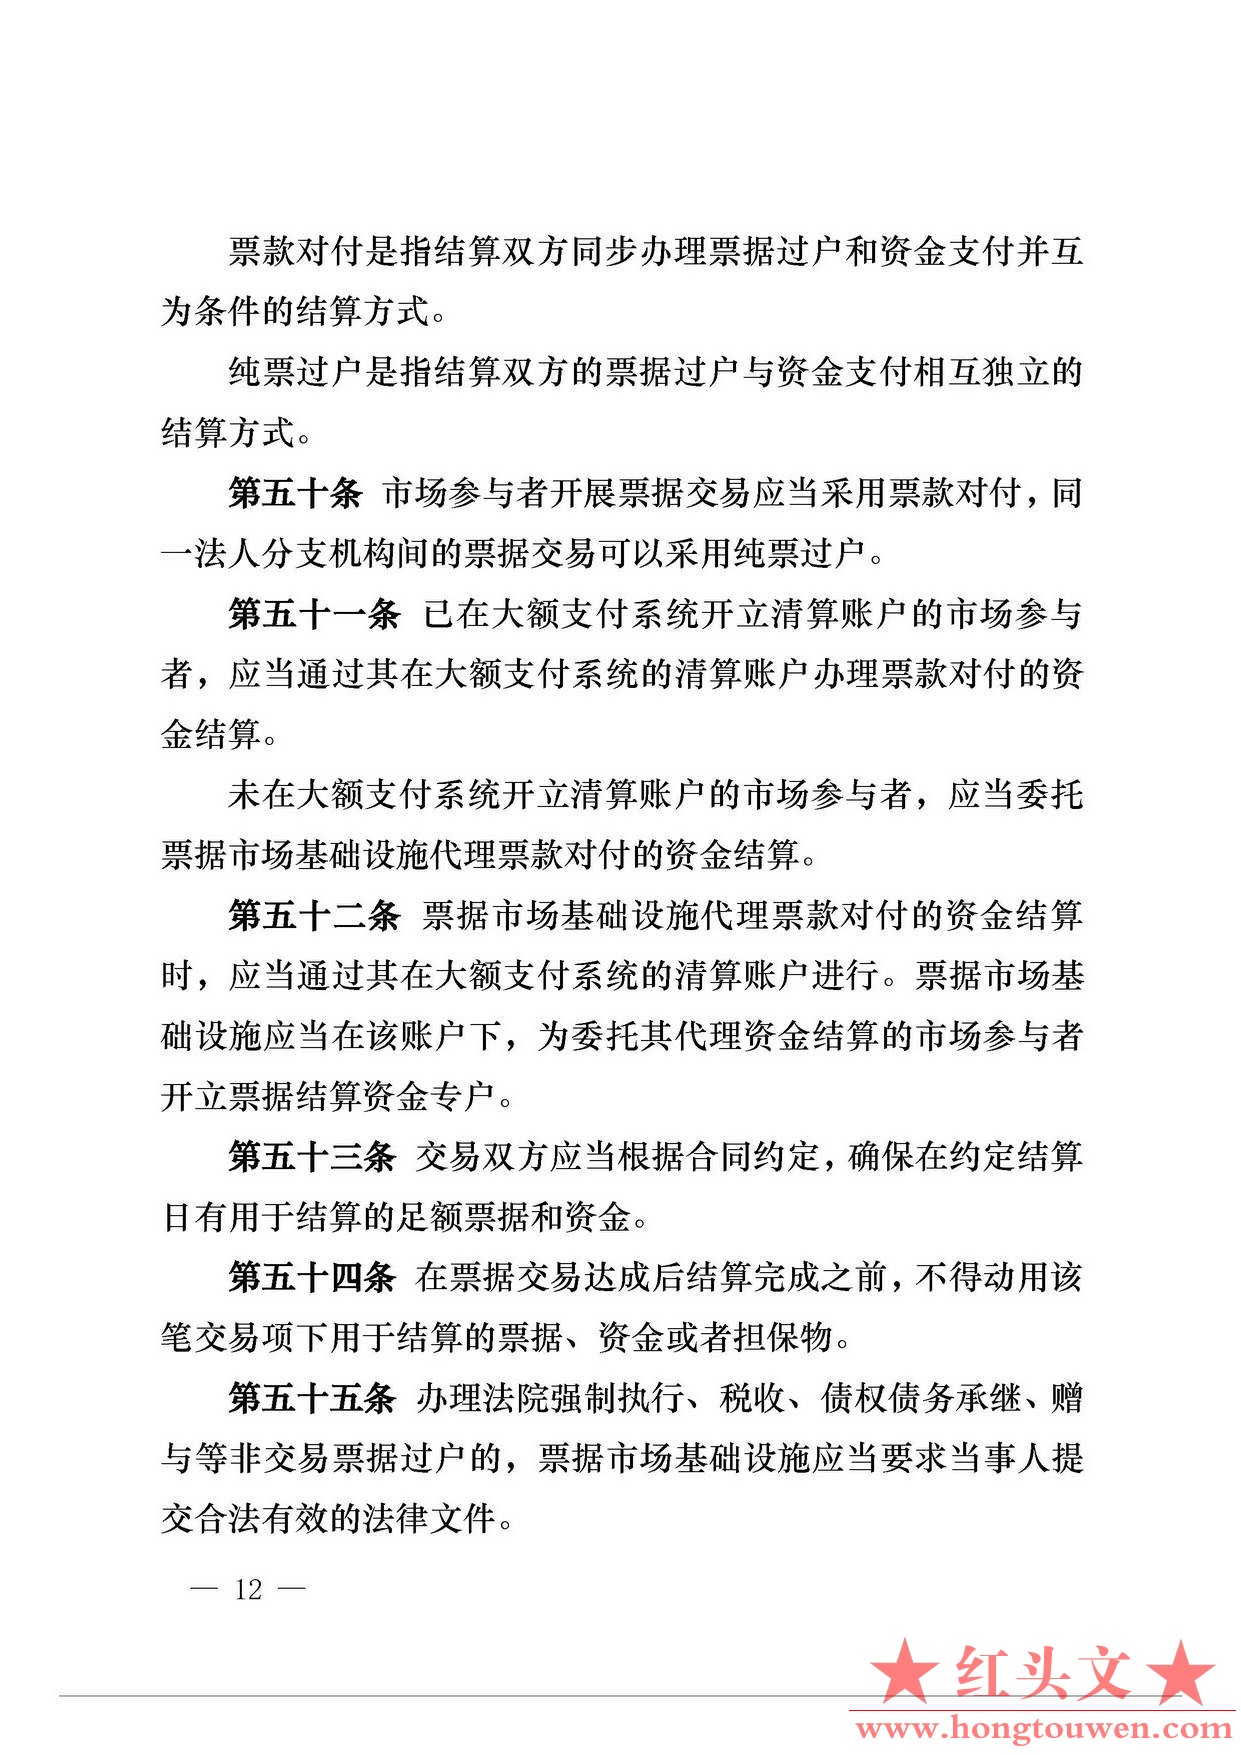 中国人民银行公告[2016]29号-票据交易管理办法_页面_12.jpg